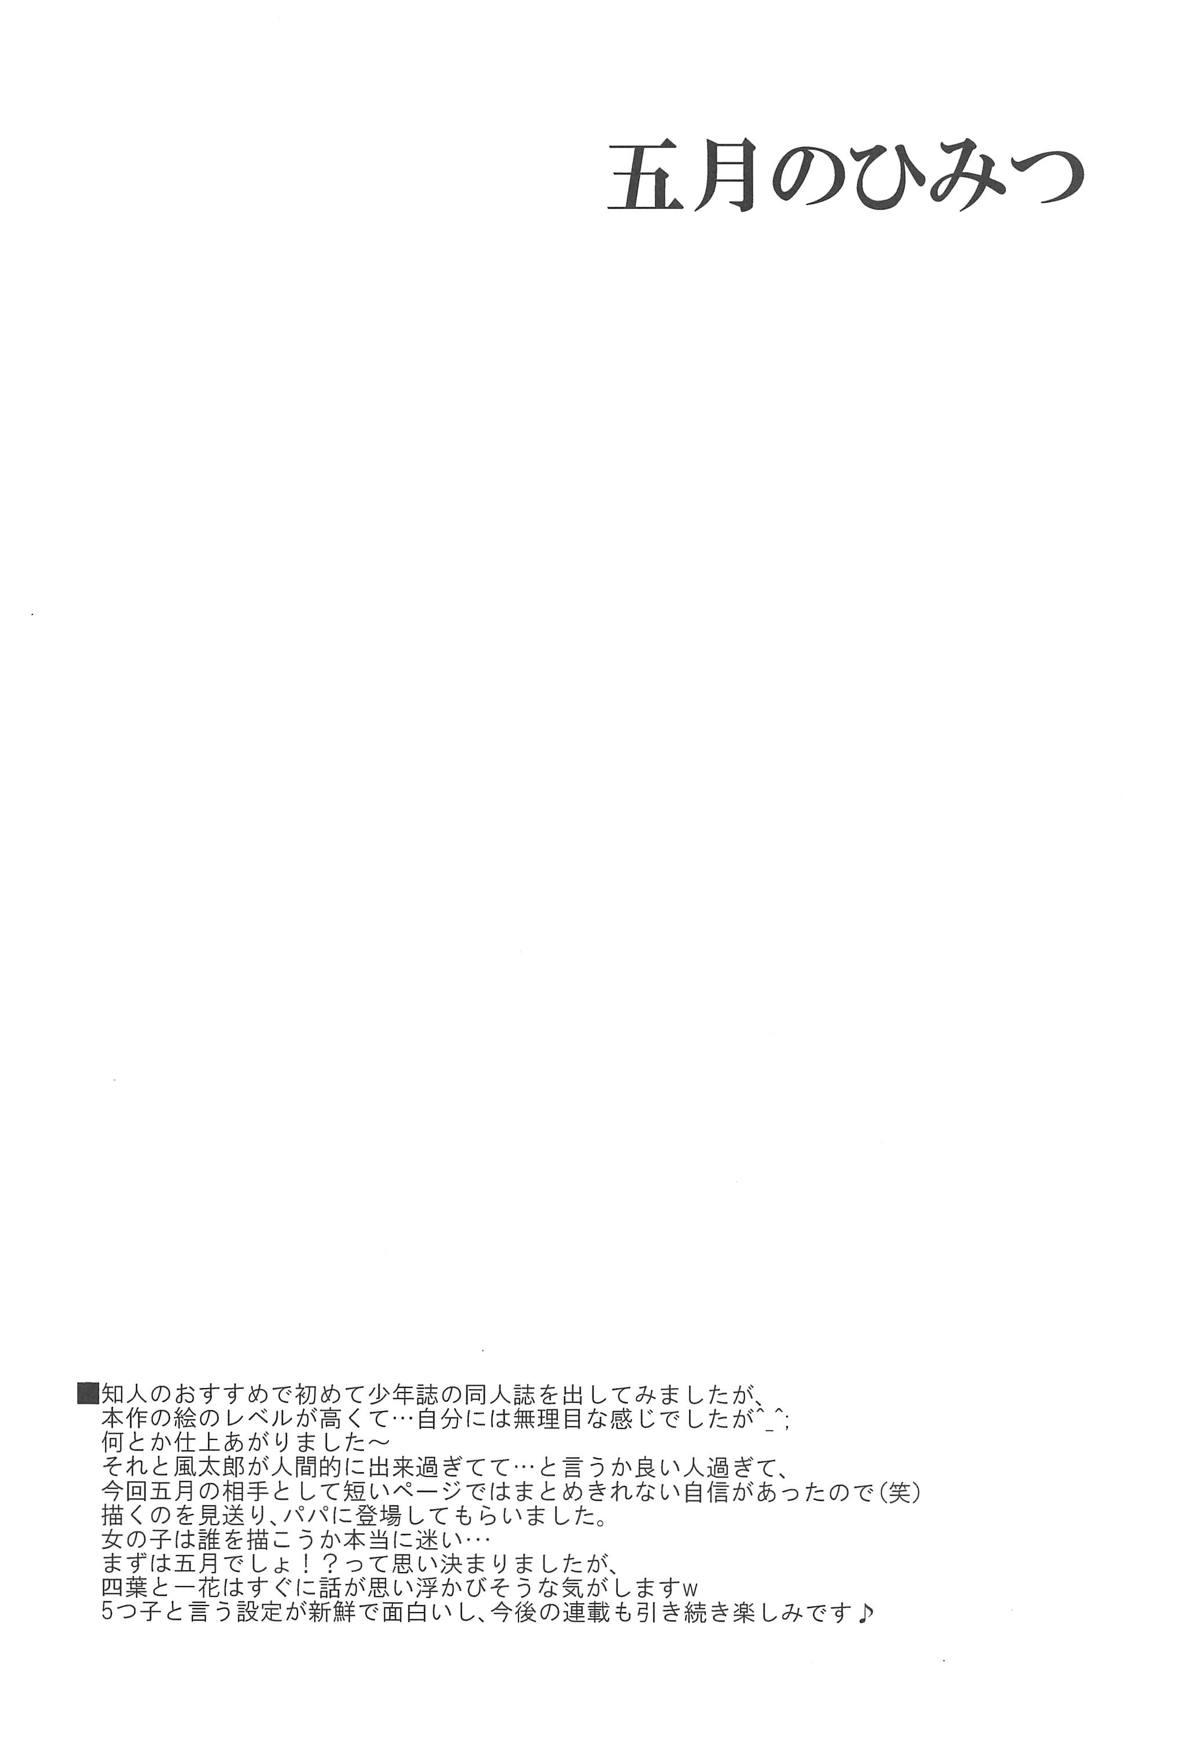 Tall Itsuki no Himitsu - Gotoubun no hanayome Loira - Page 3